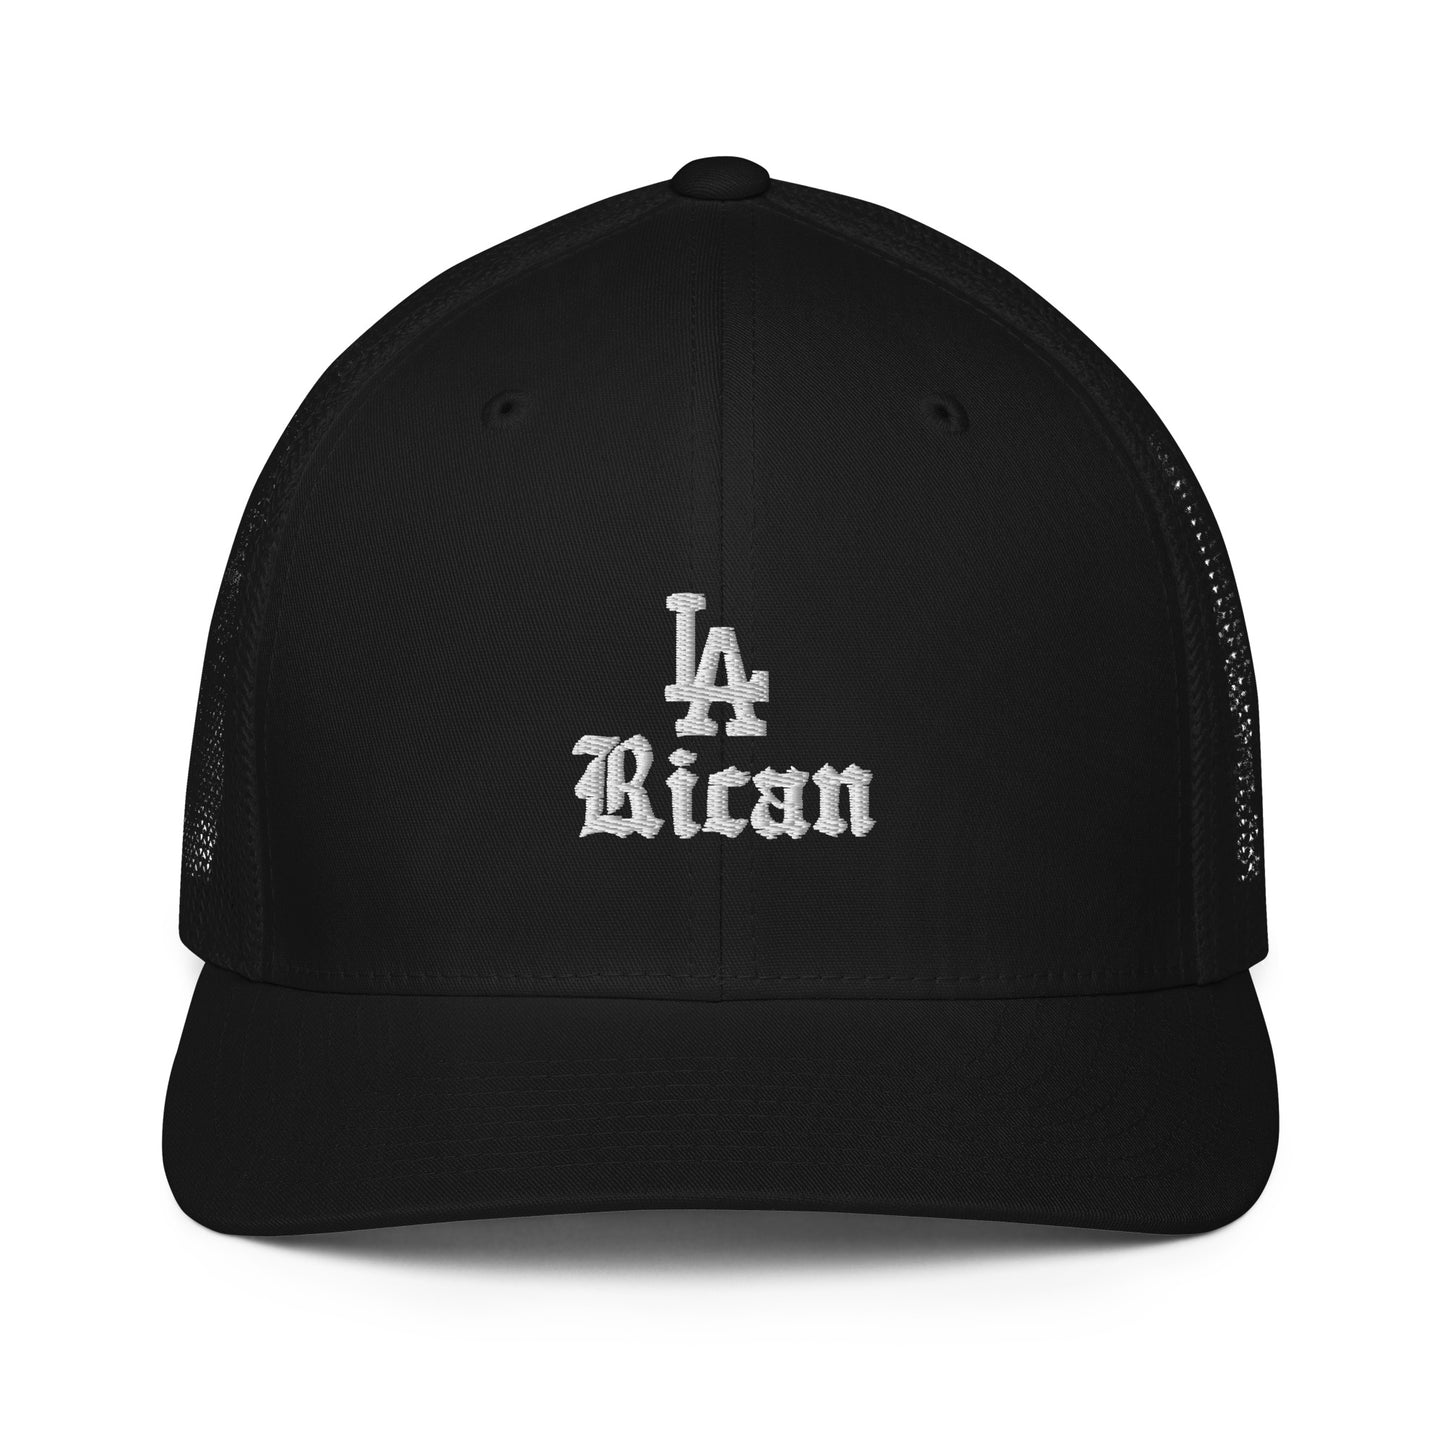 LA Rican- Closed-back trucker cap